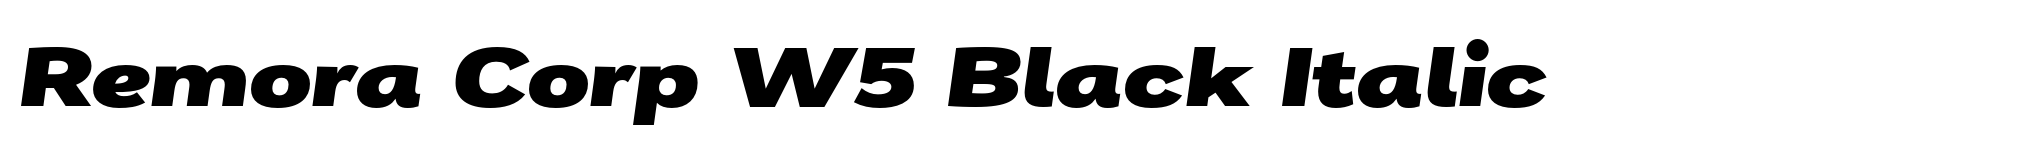 Remora Corp W5 Black Italic image